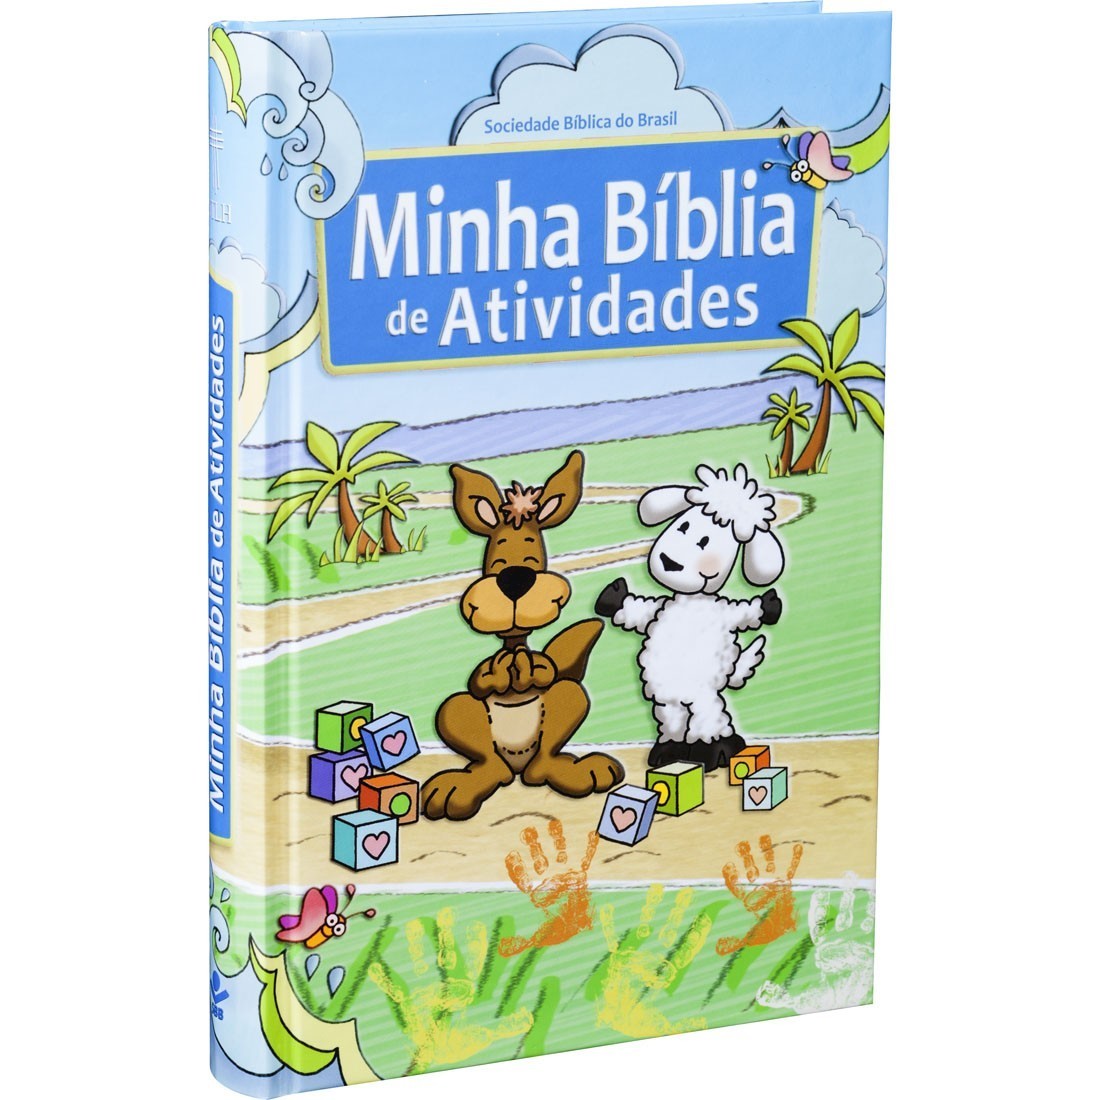 Bíblia Minha Bíblia de Atividades